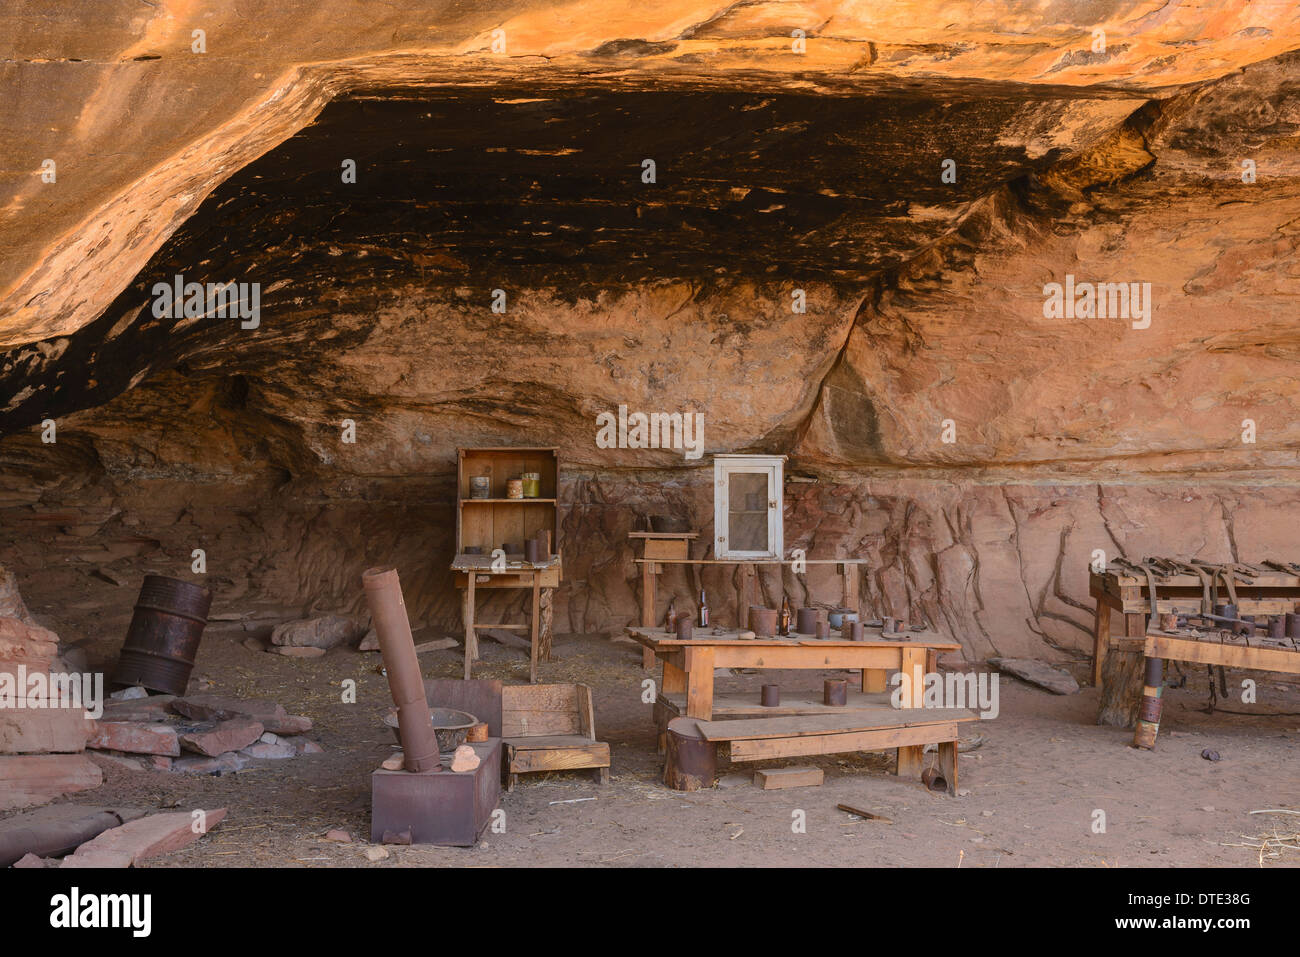 Cave springs immagini e fotografie stock ad alta risoluzione - Alamy